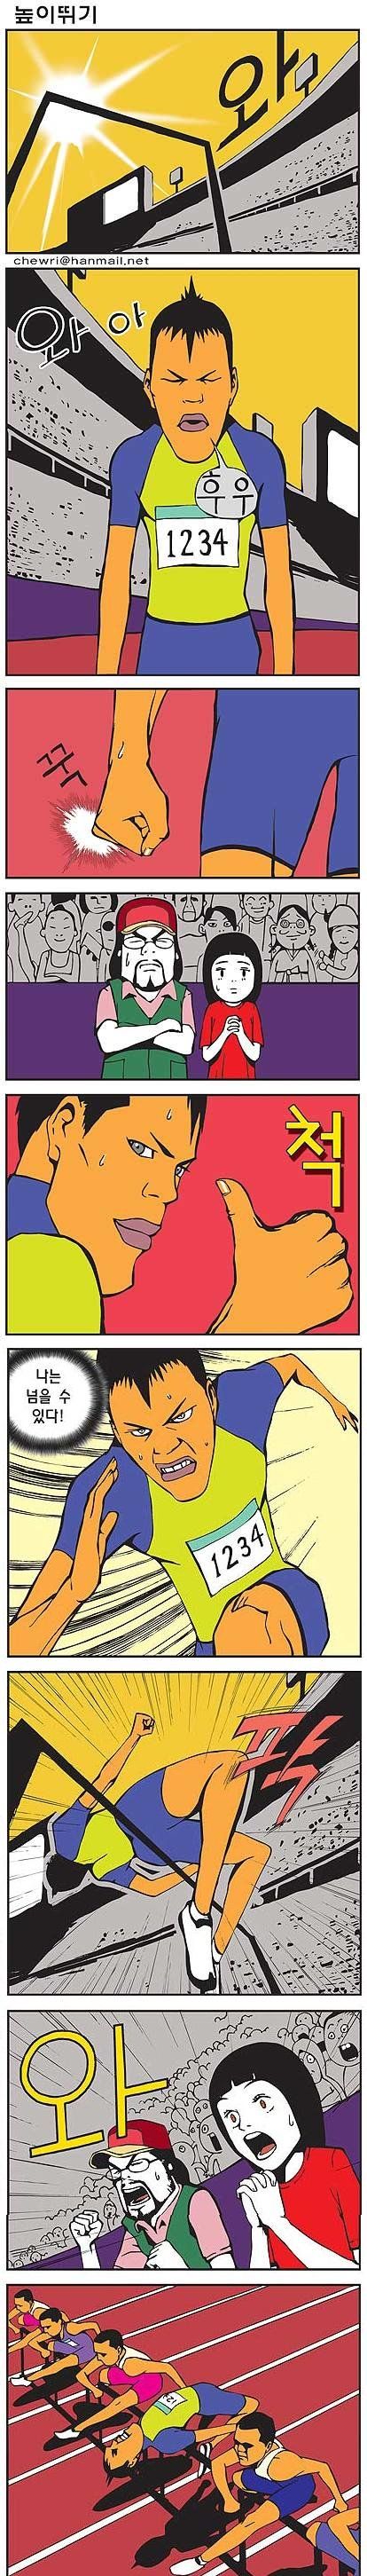 Korean Comics (41 pics)